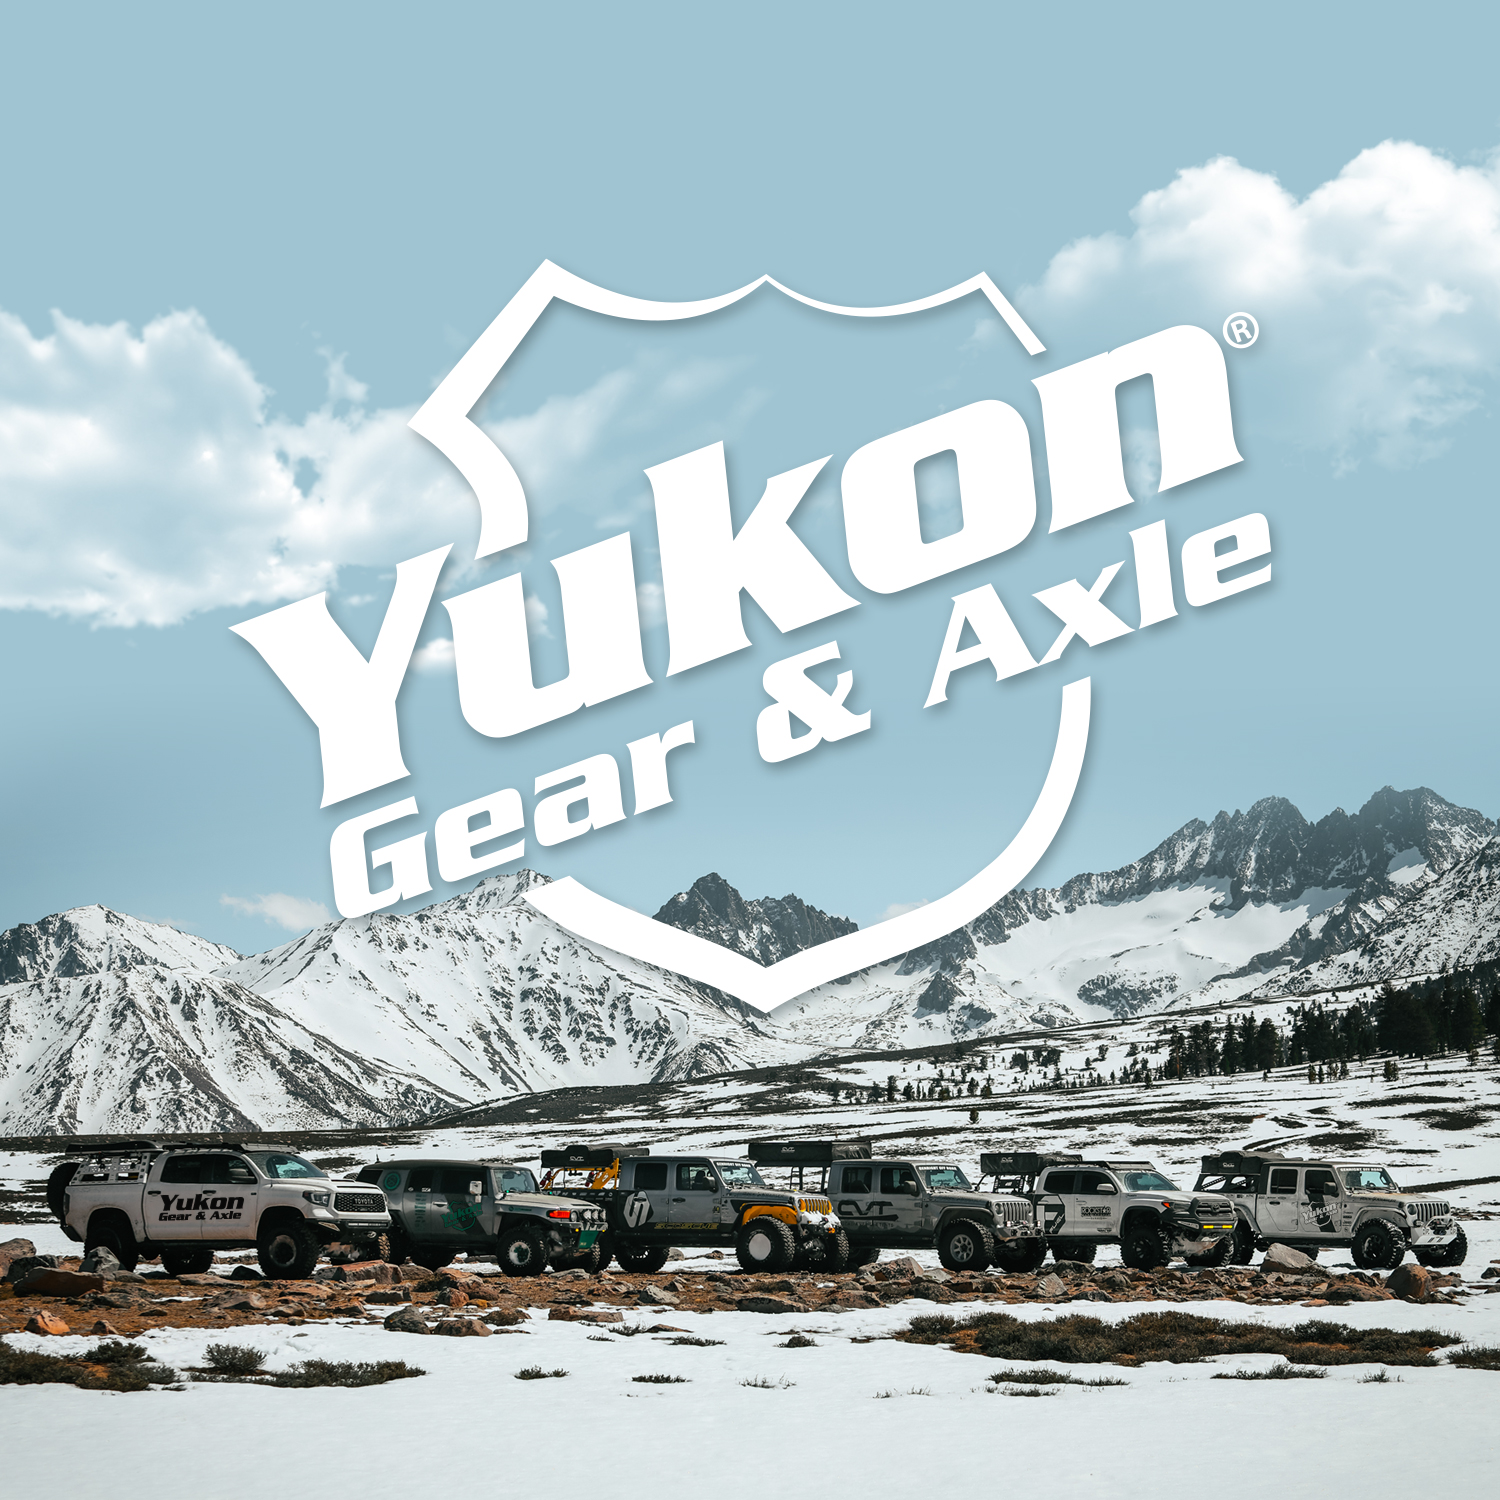 Yukon Master Overhaul kit for '57-'62 GM Oldsmobile differential 